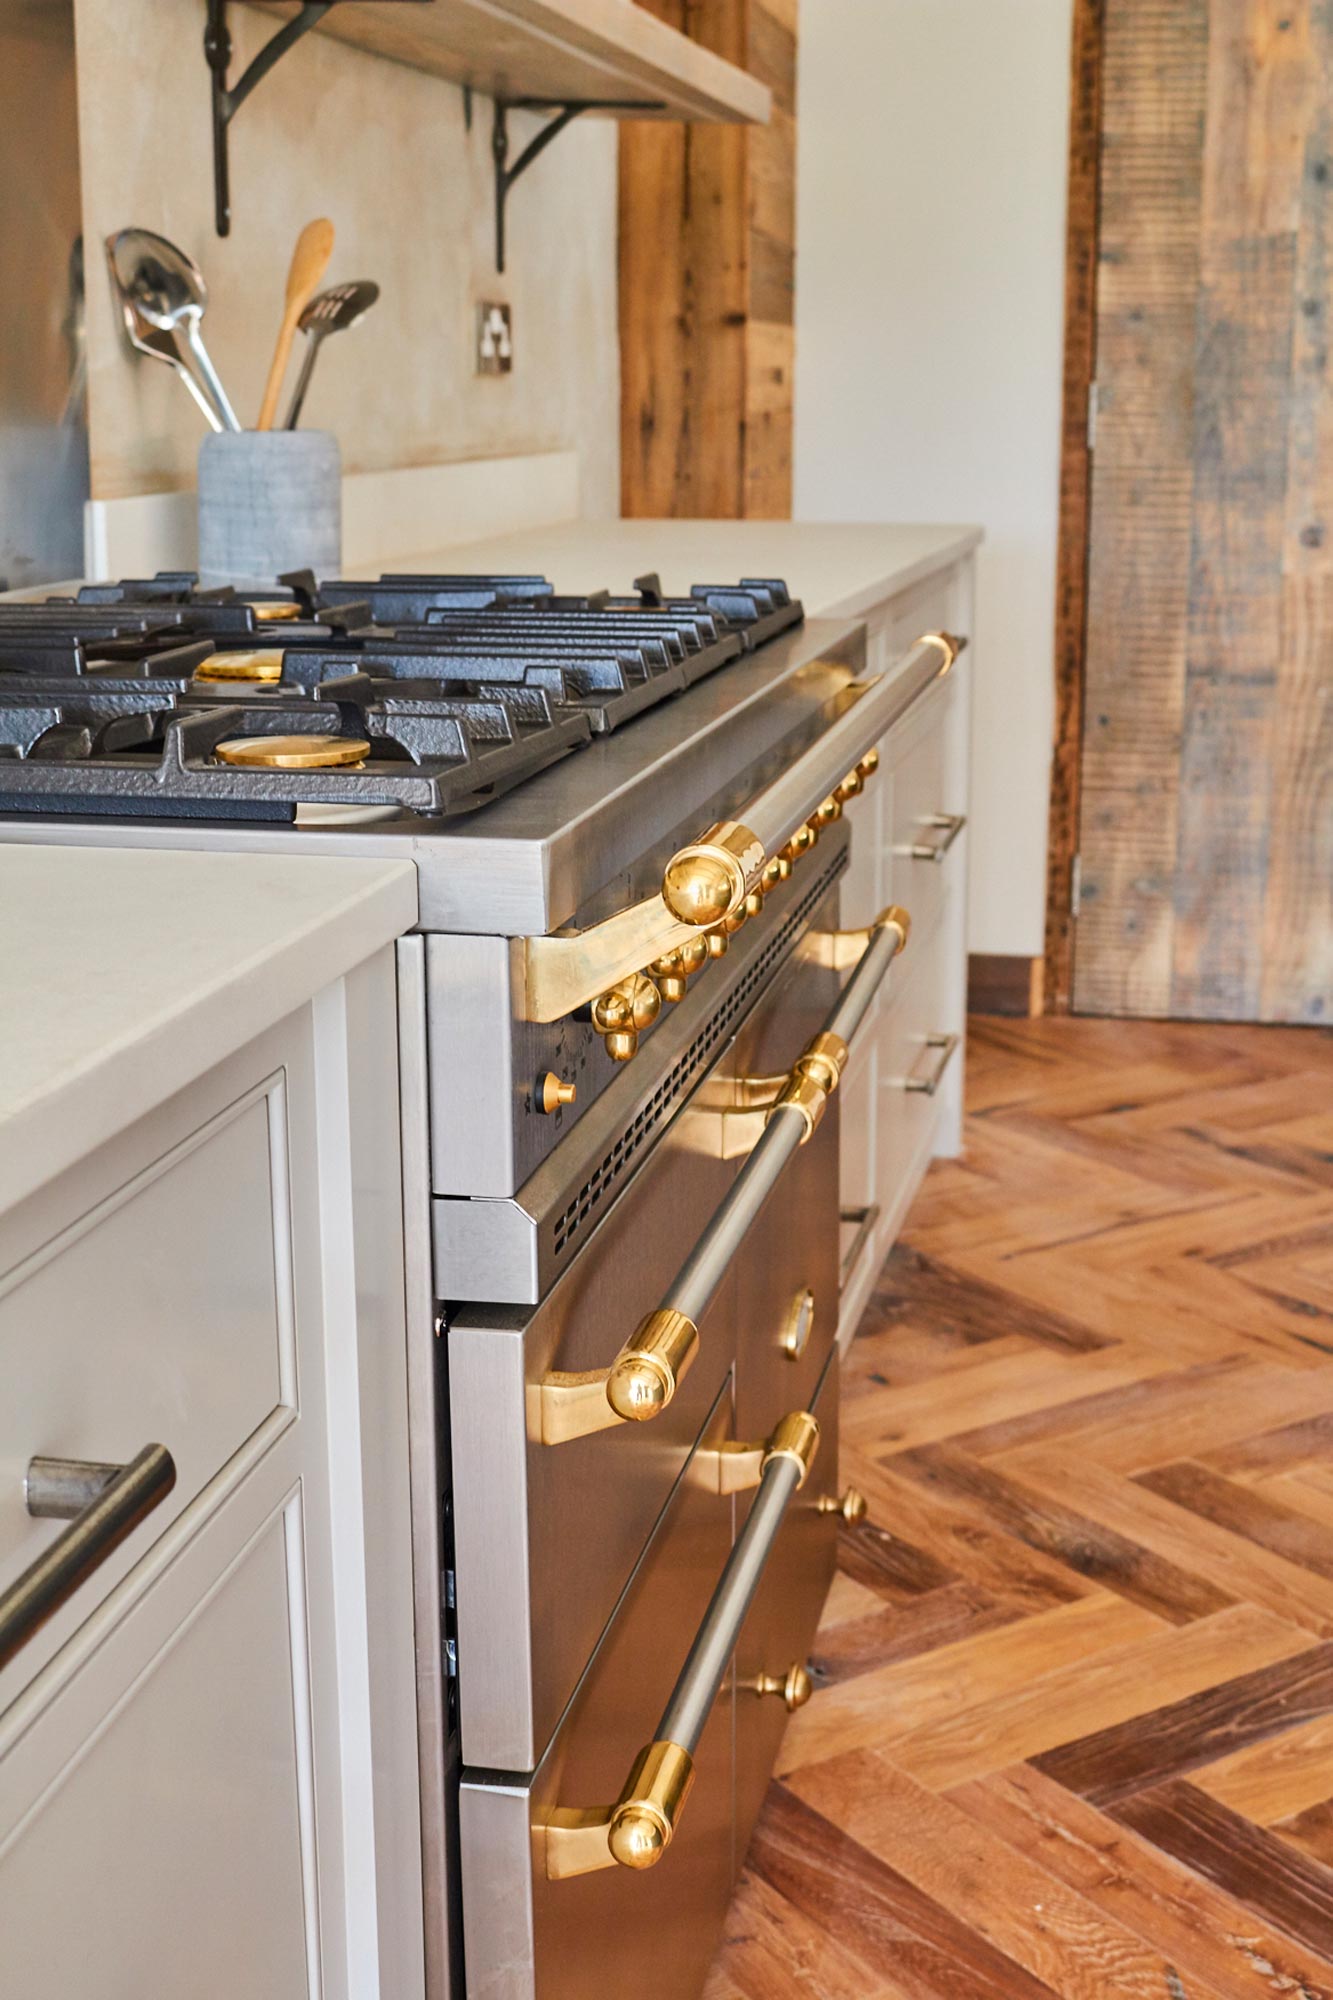 Stainless steel range cooker sits on herringbone oak floor